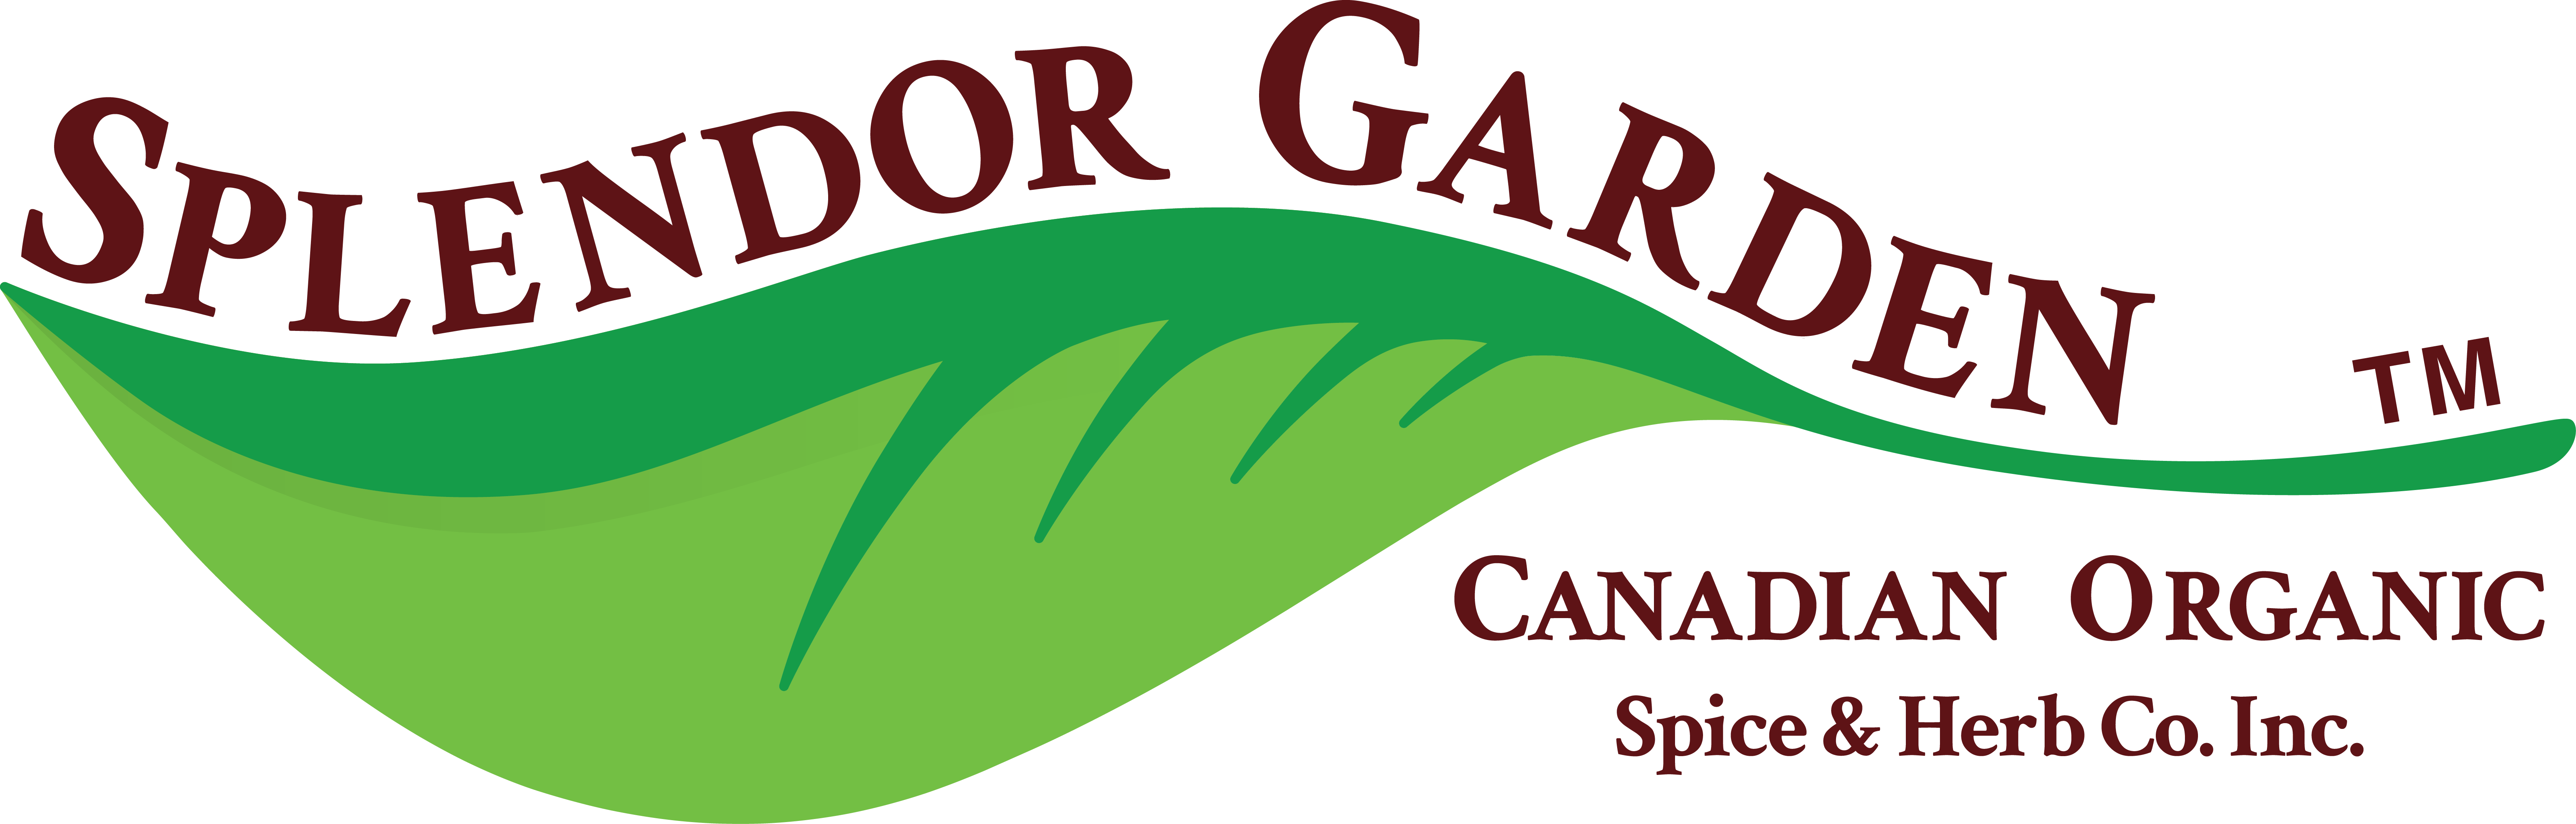 Splendor Logo - Splendor Garden Oats (6719x2149)